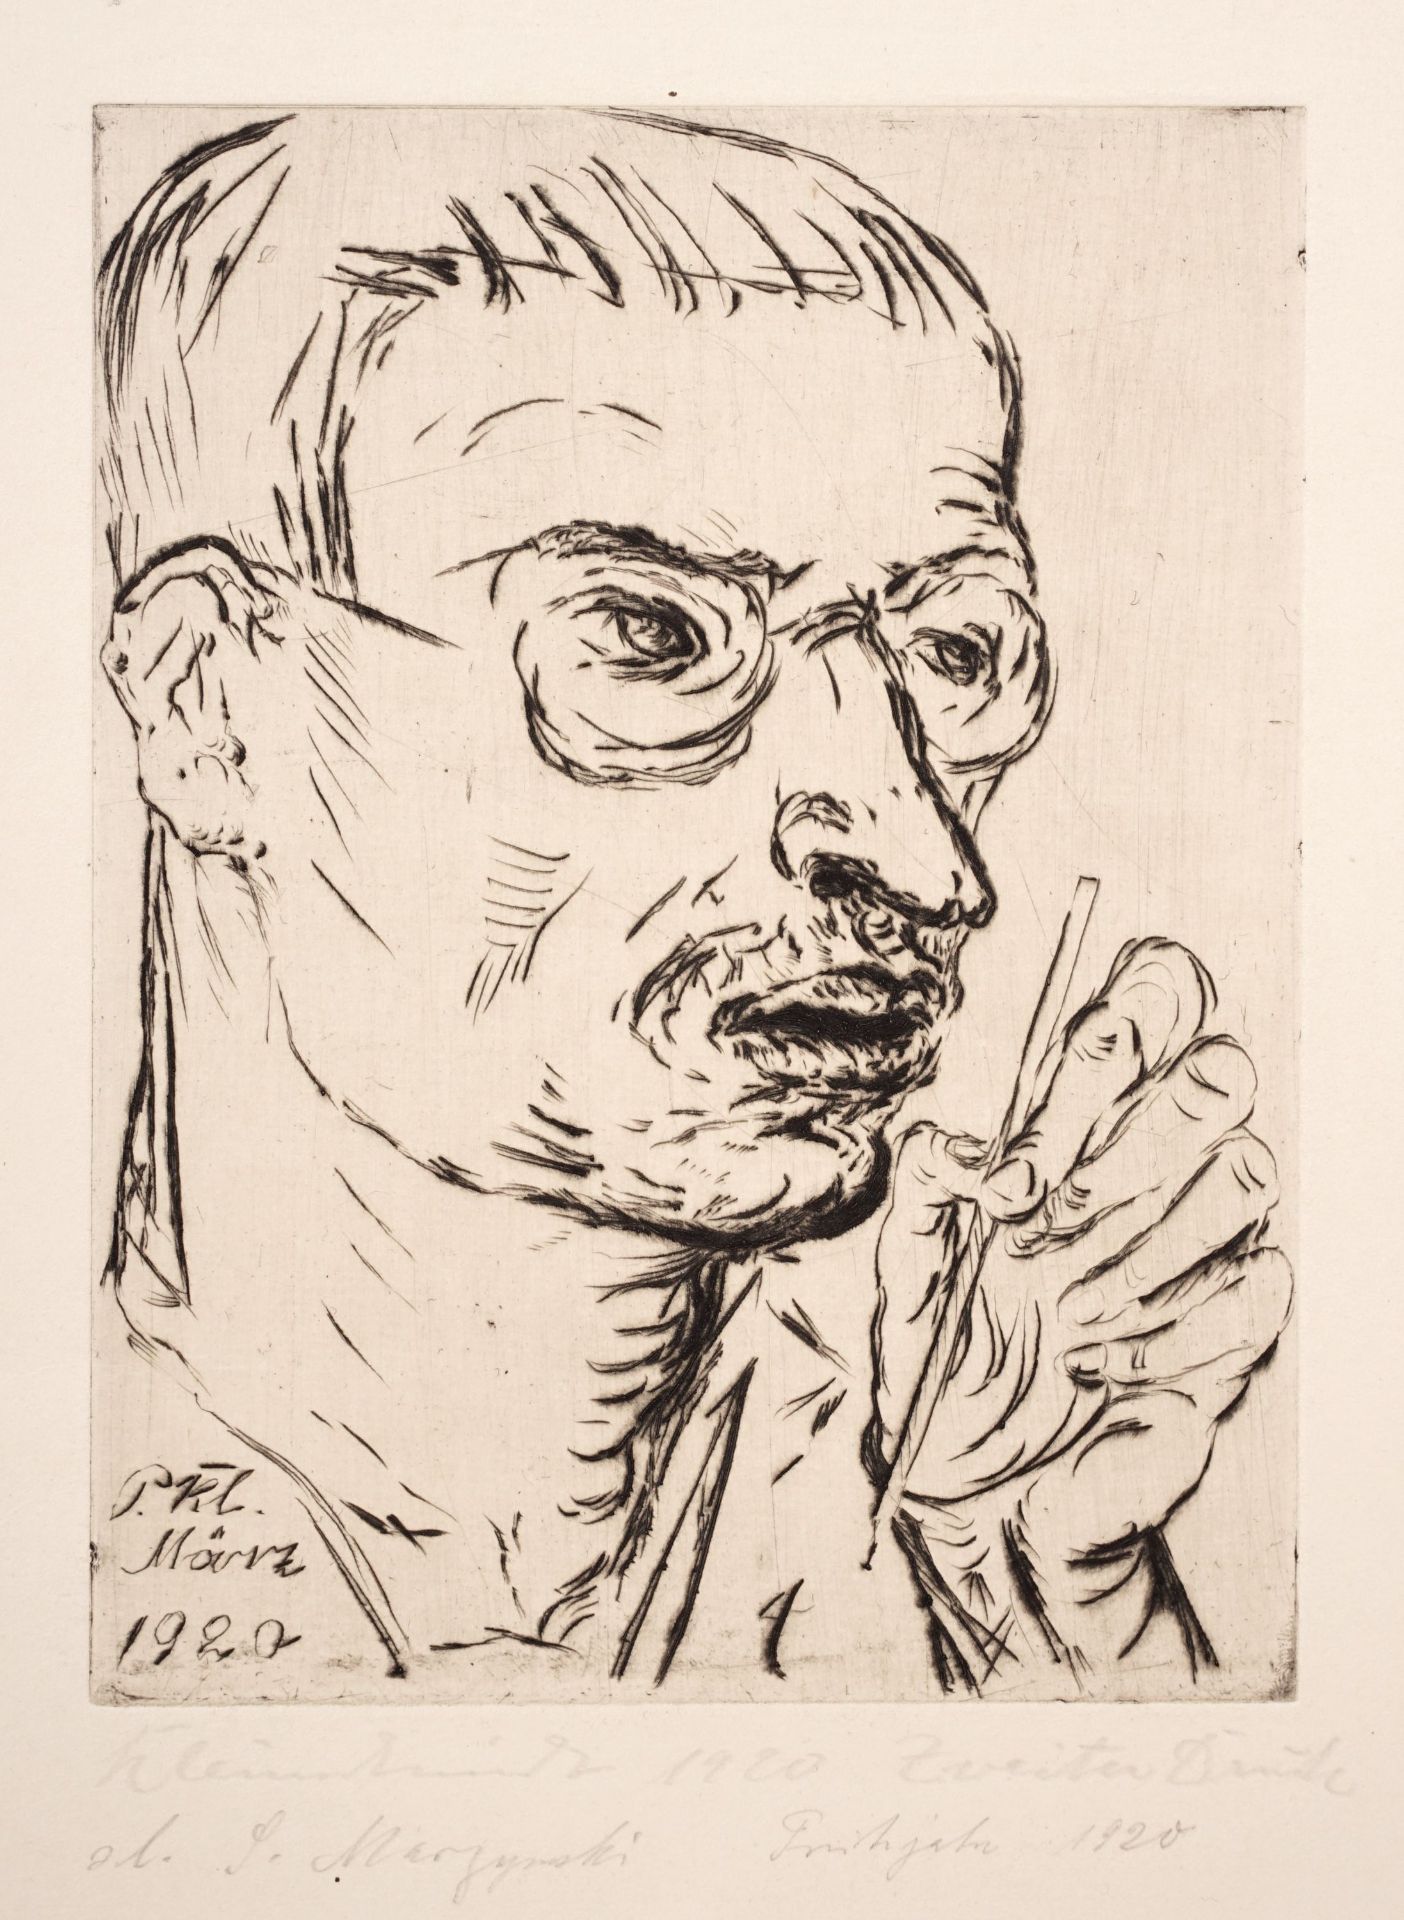 Paul Kleinschmidt "Selbstbildnis mit Stift". 1920.